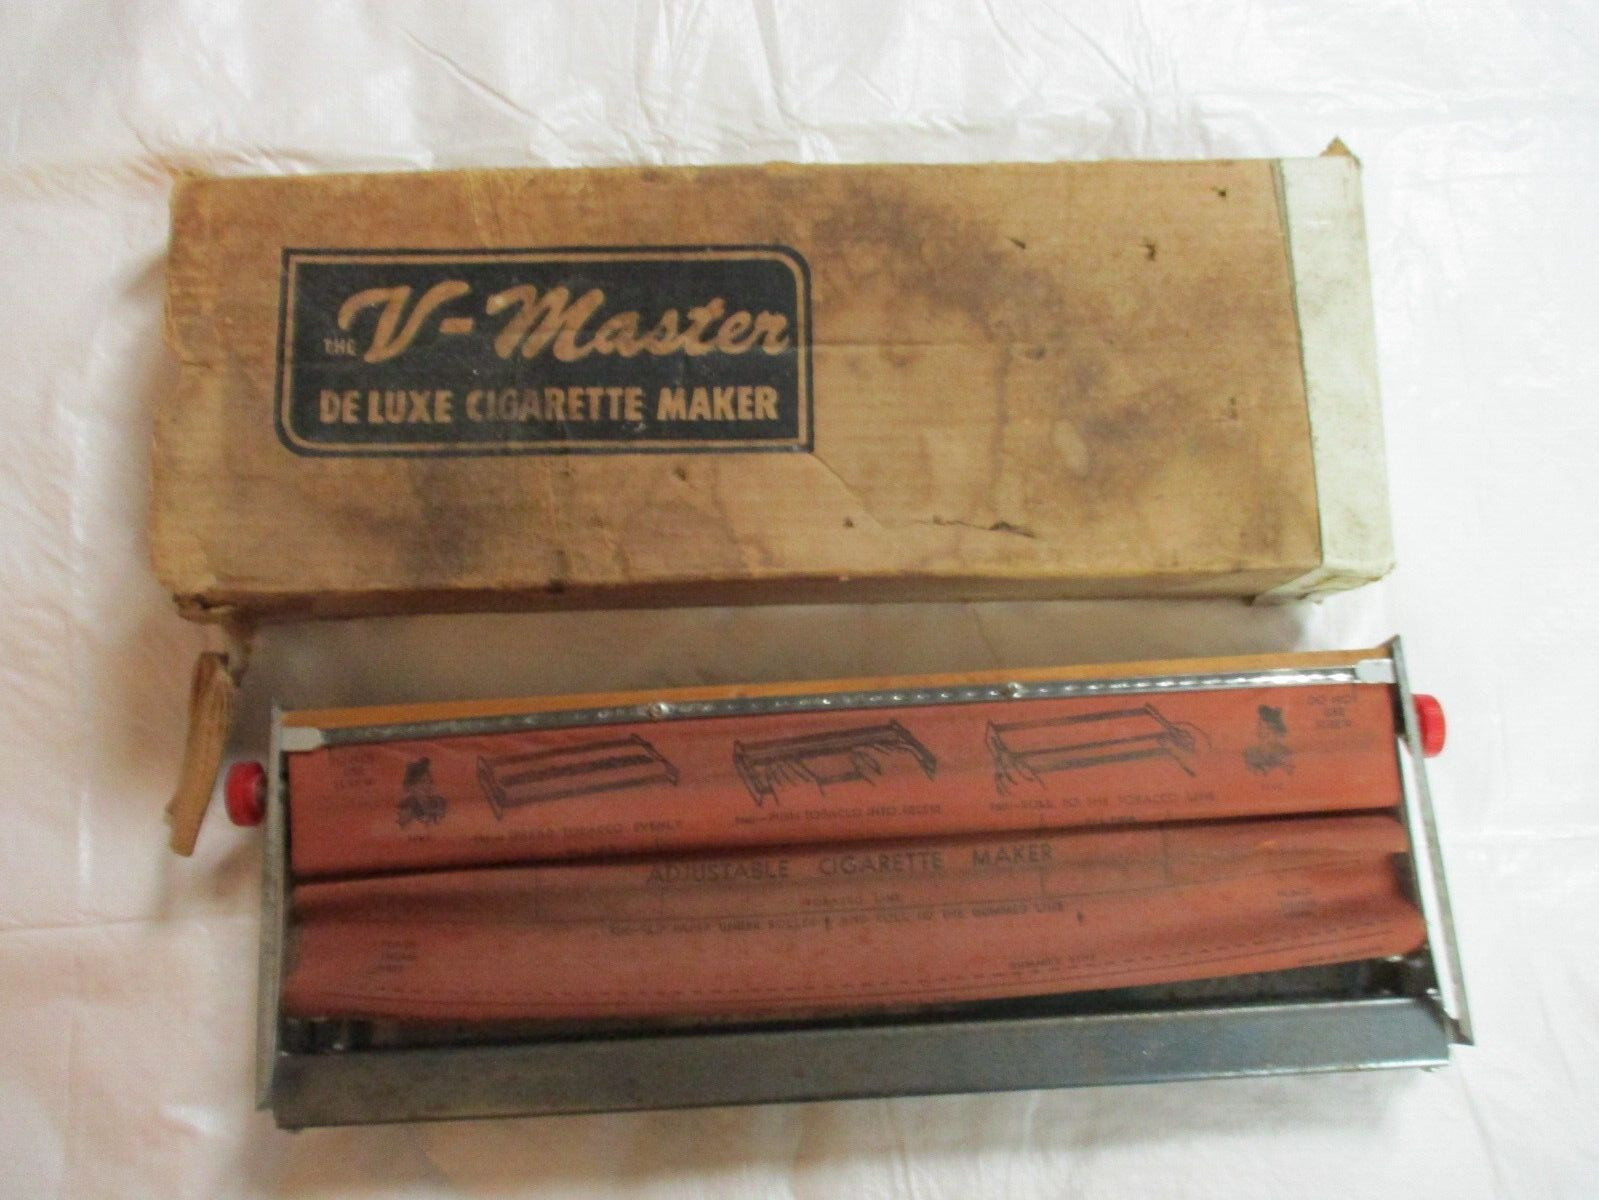 Vintage V-Master Deluxe Cigarette Maker Rolling Machine